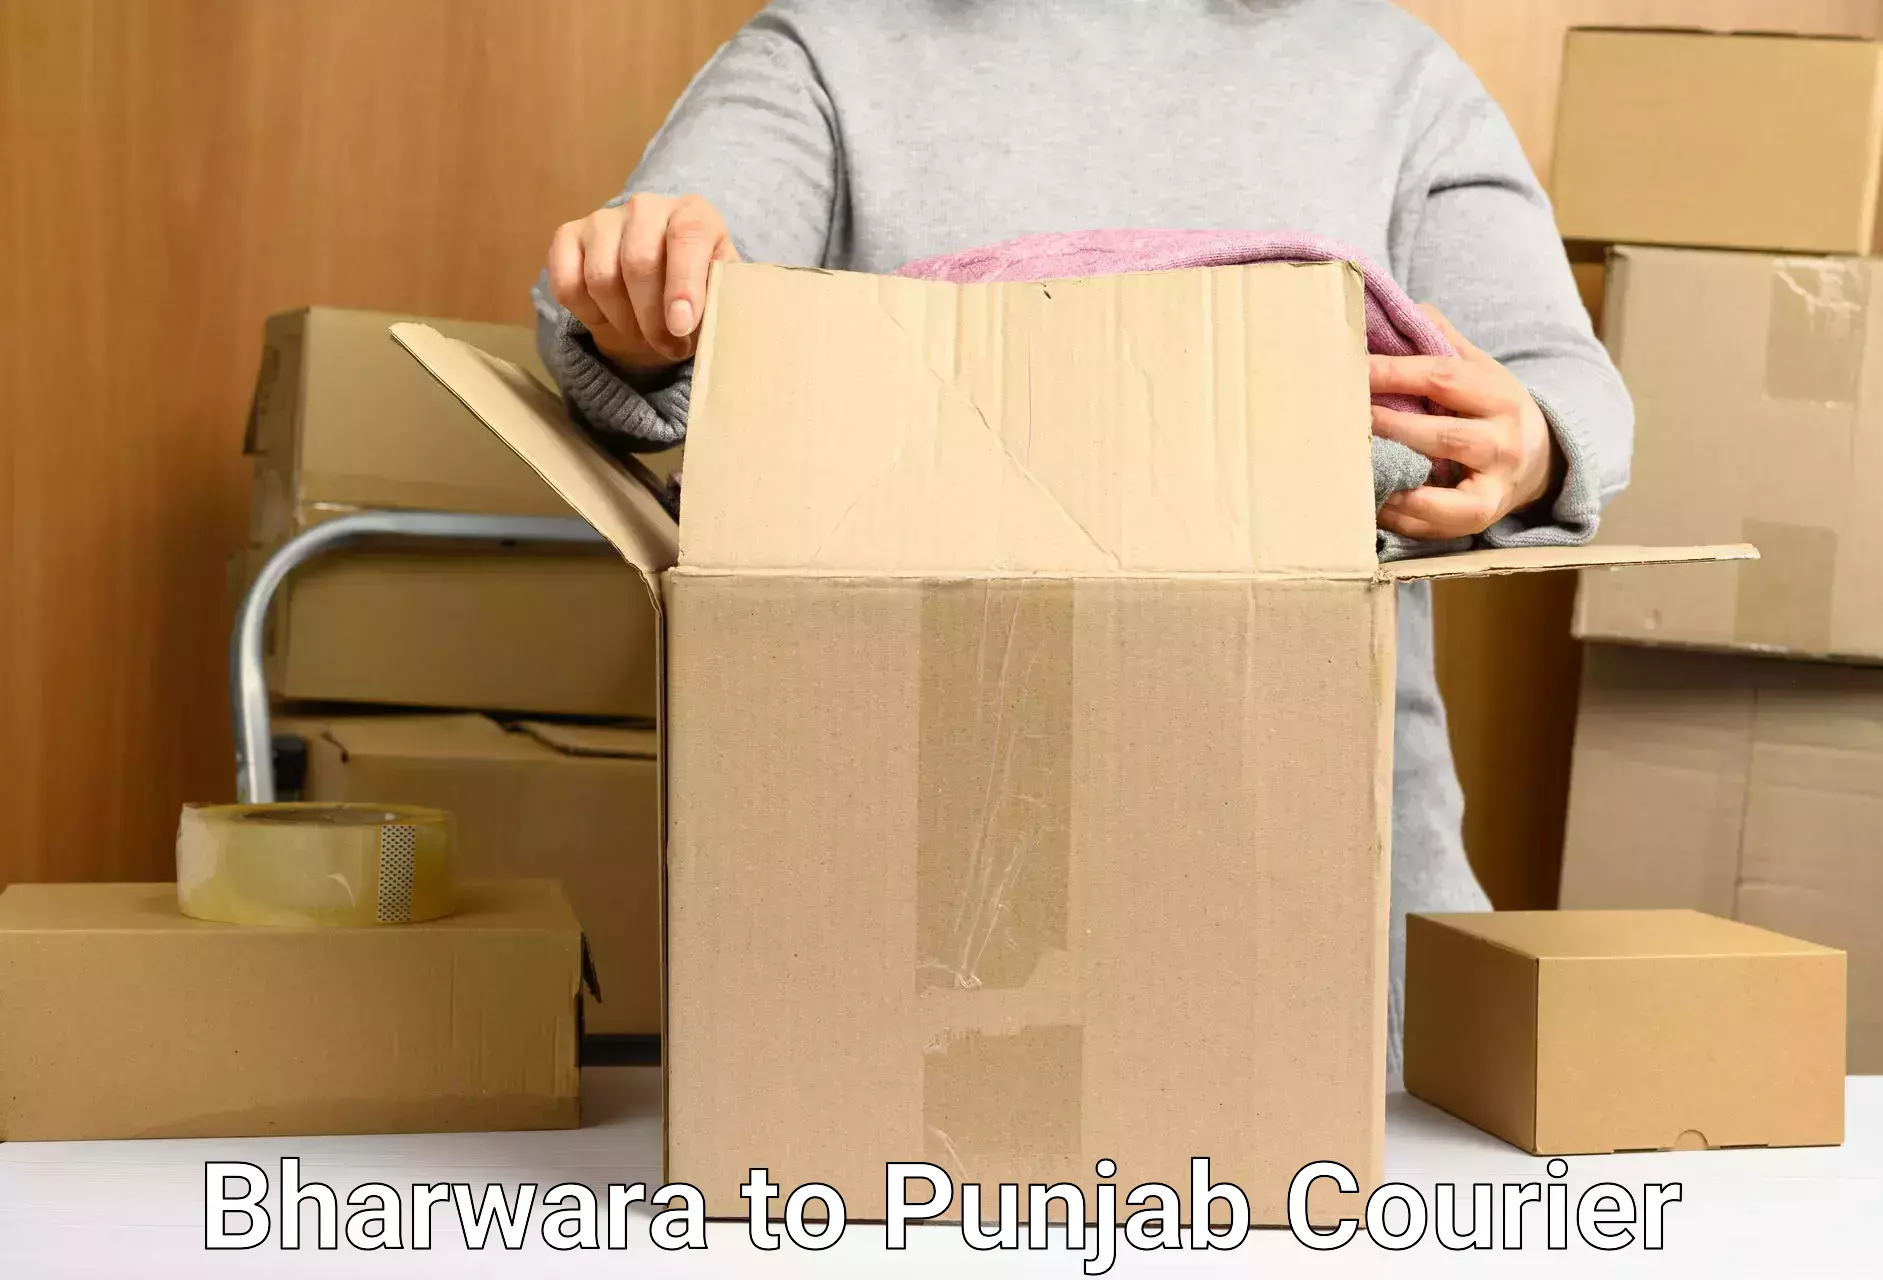 Efficient parcel transport Bharwara to Punjab